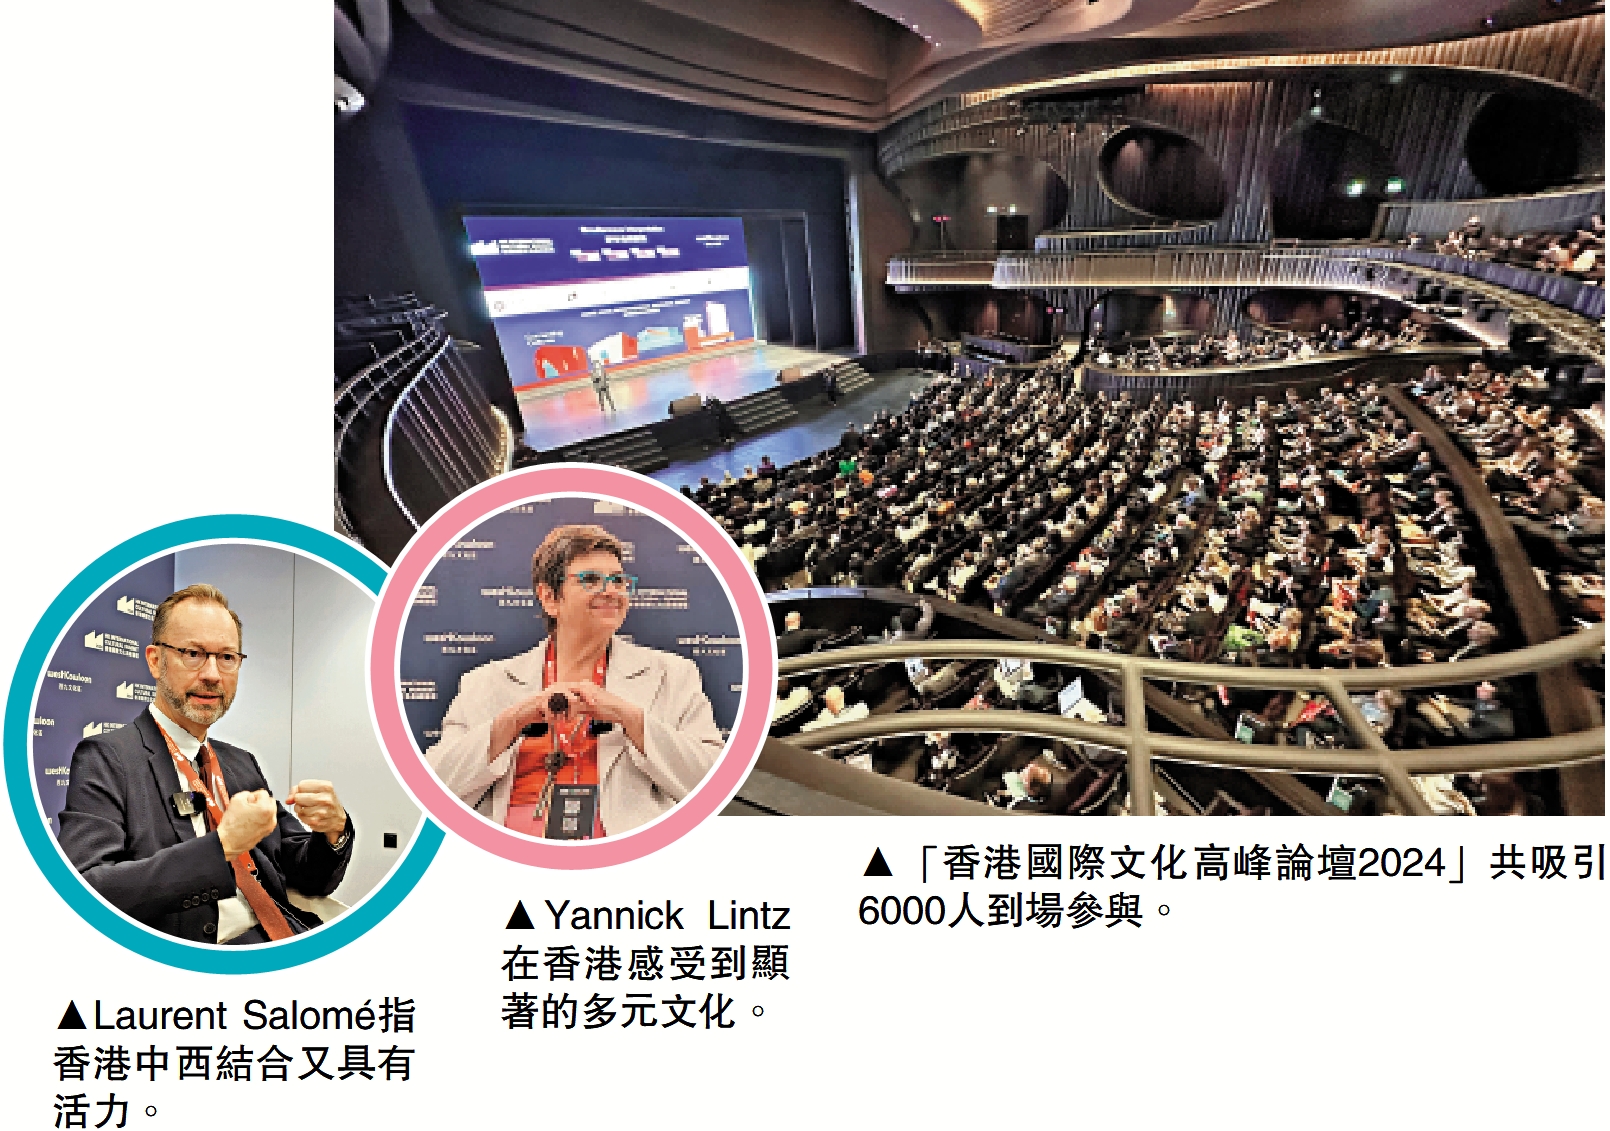 　　圖：Laurent Salomé指香港中西結合又具有活力。圖：Yannick Lintz在香港感受到顯著的多元文化。圖：「香港國際文化高峰論壇2024」共吸引6000人到場參與。